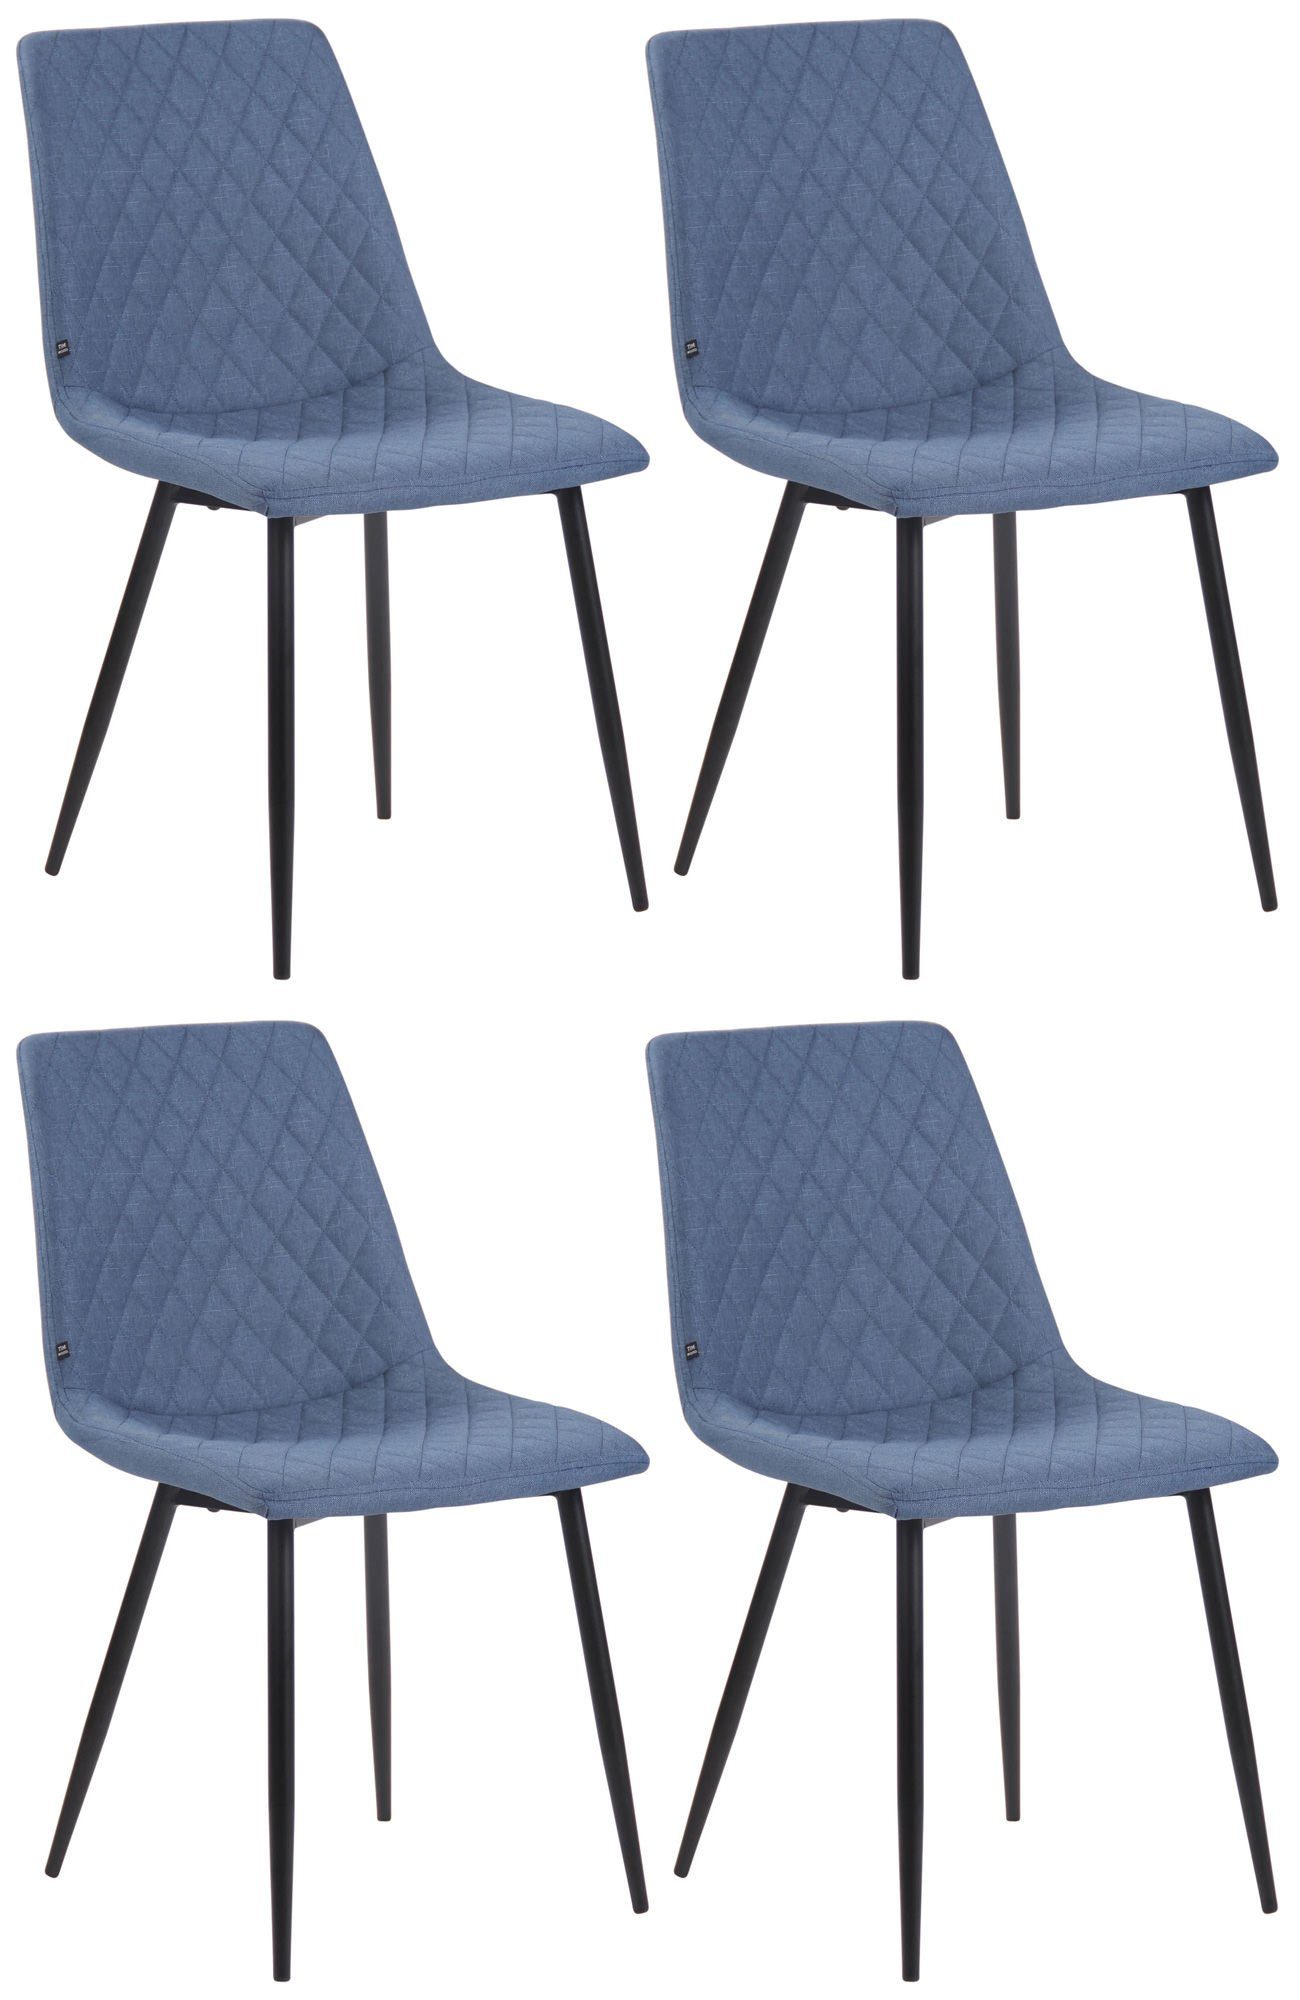 CLP Esszimmerstuhl Telde Stoff (4er Set), gepolstert&gesteppt, retro blau | Stühle